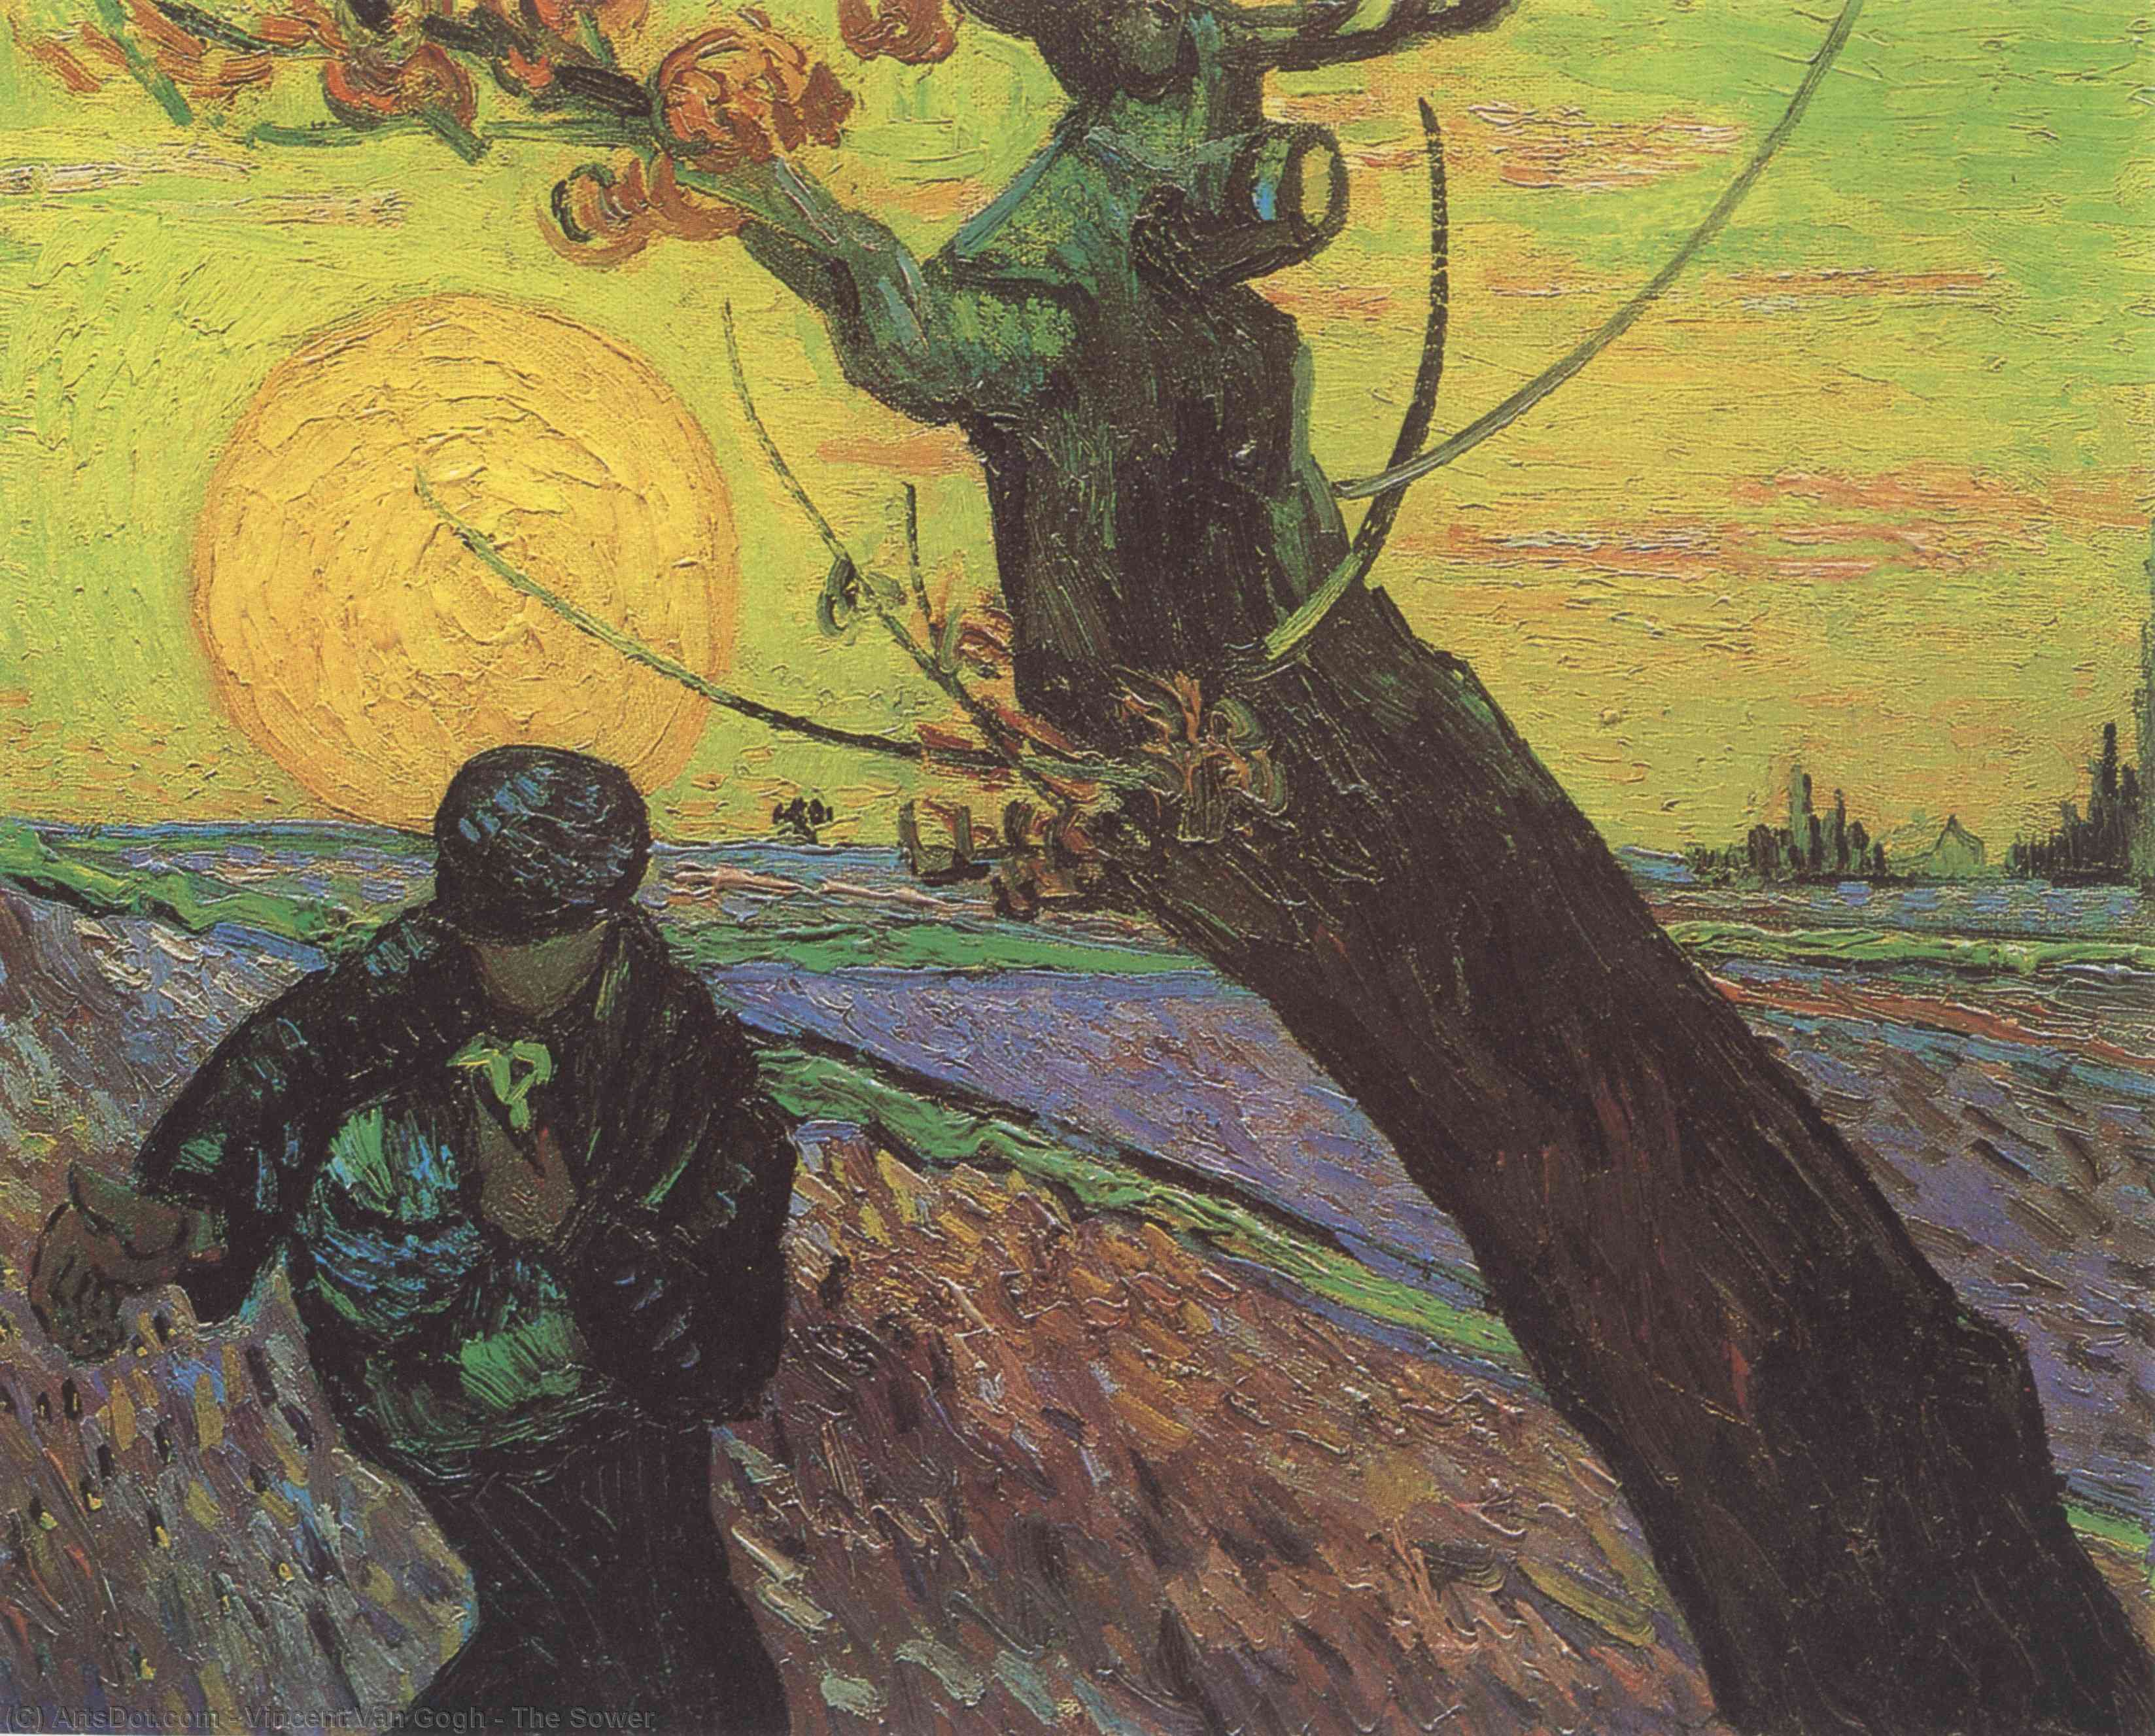 Acheter Reproductions D'art De Musée Le Semeur, 1888 de Vincent Van Gogh (1853-1890, Netherlands) | ArtsDot.com